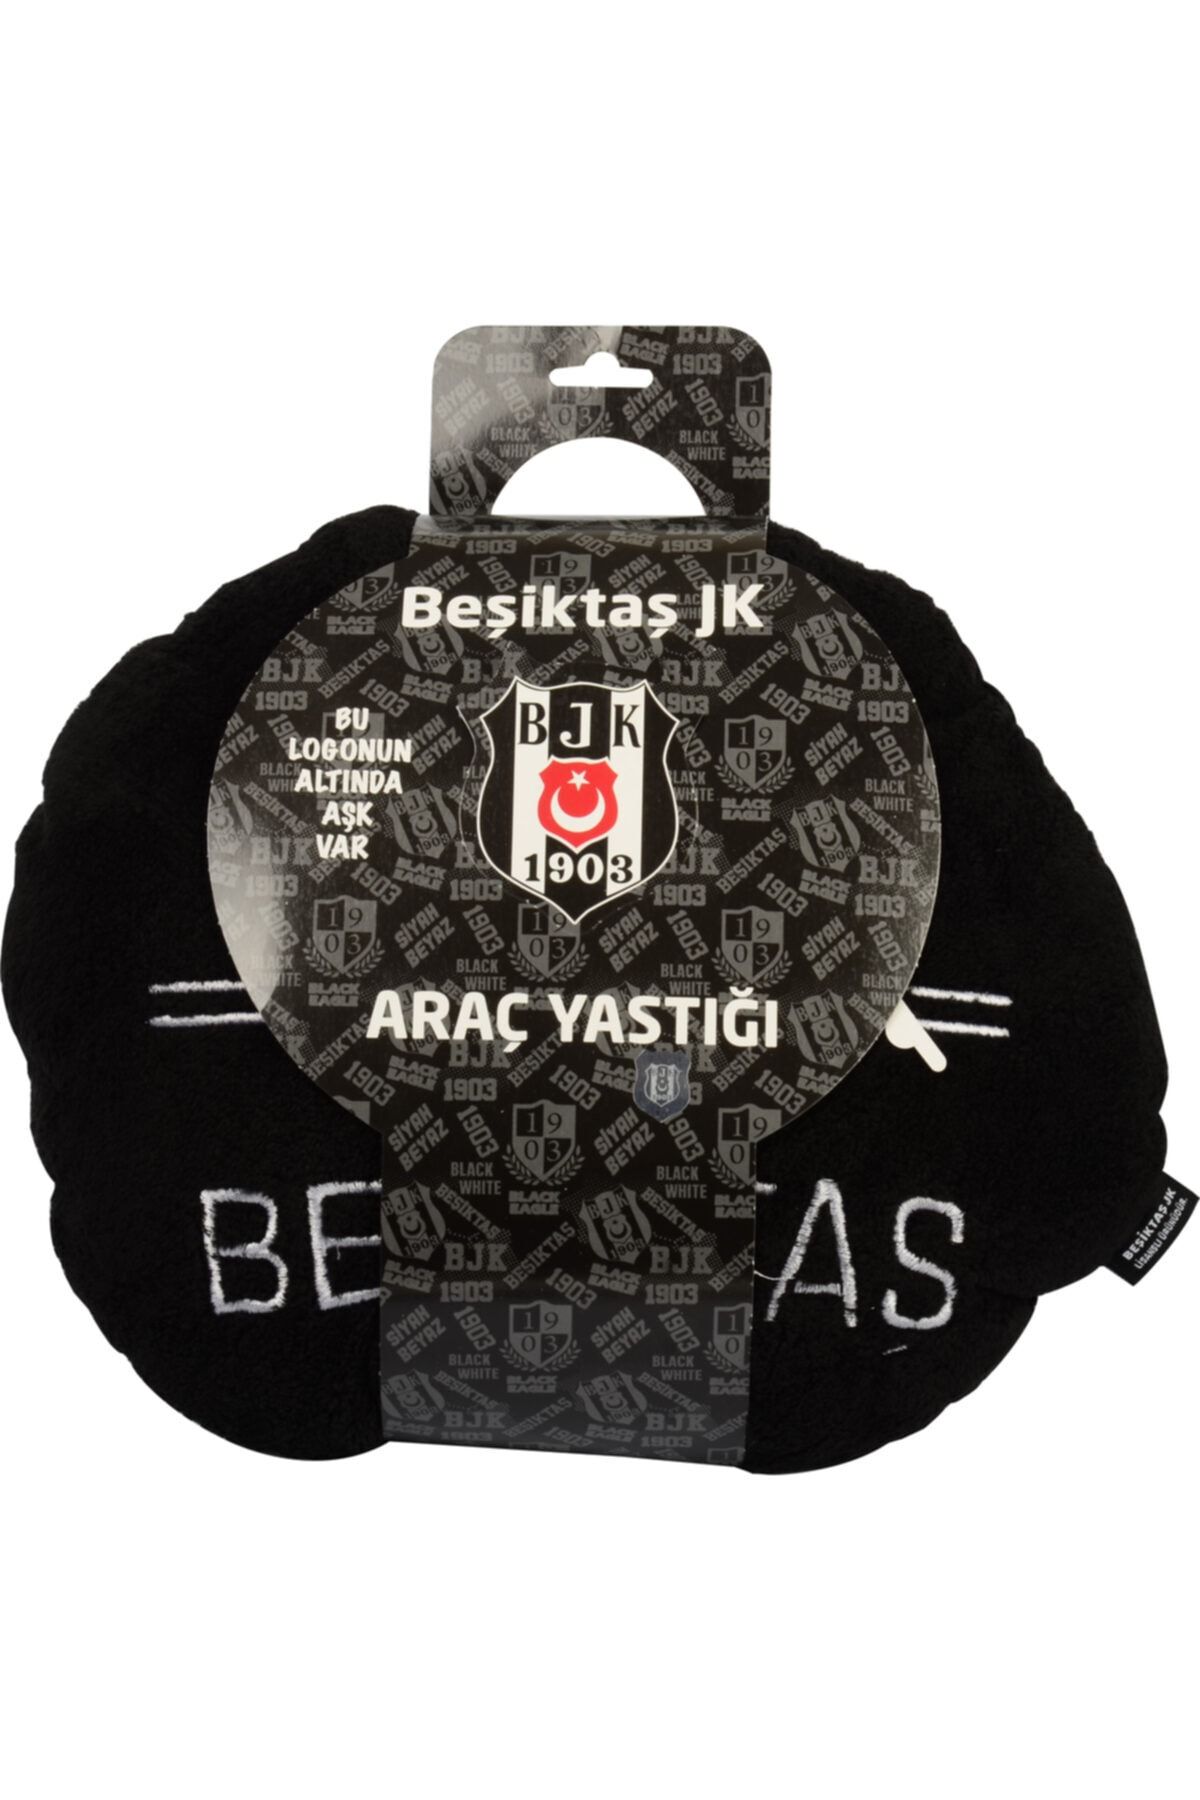 Beşiktaş Beşiktaş Orjinal Lisanslı Araç Seyahat Yastığı 40x40